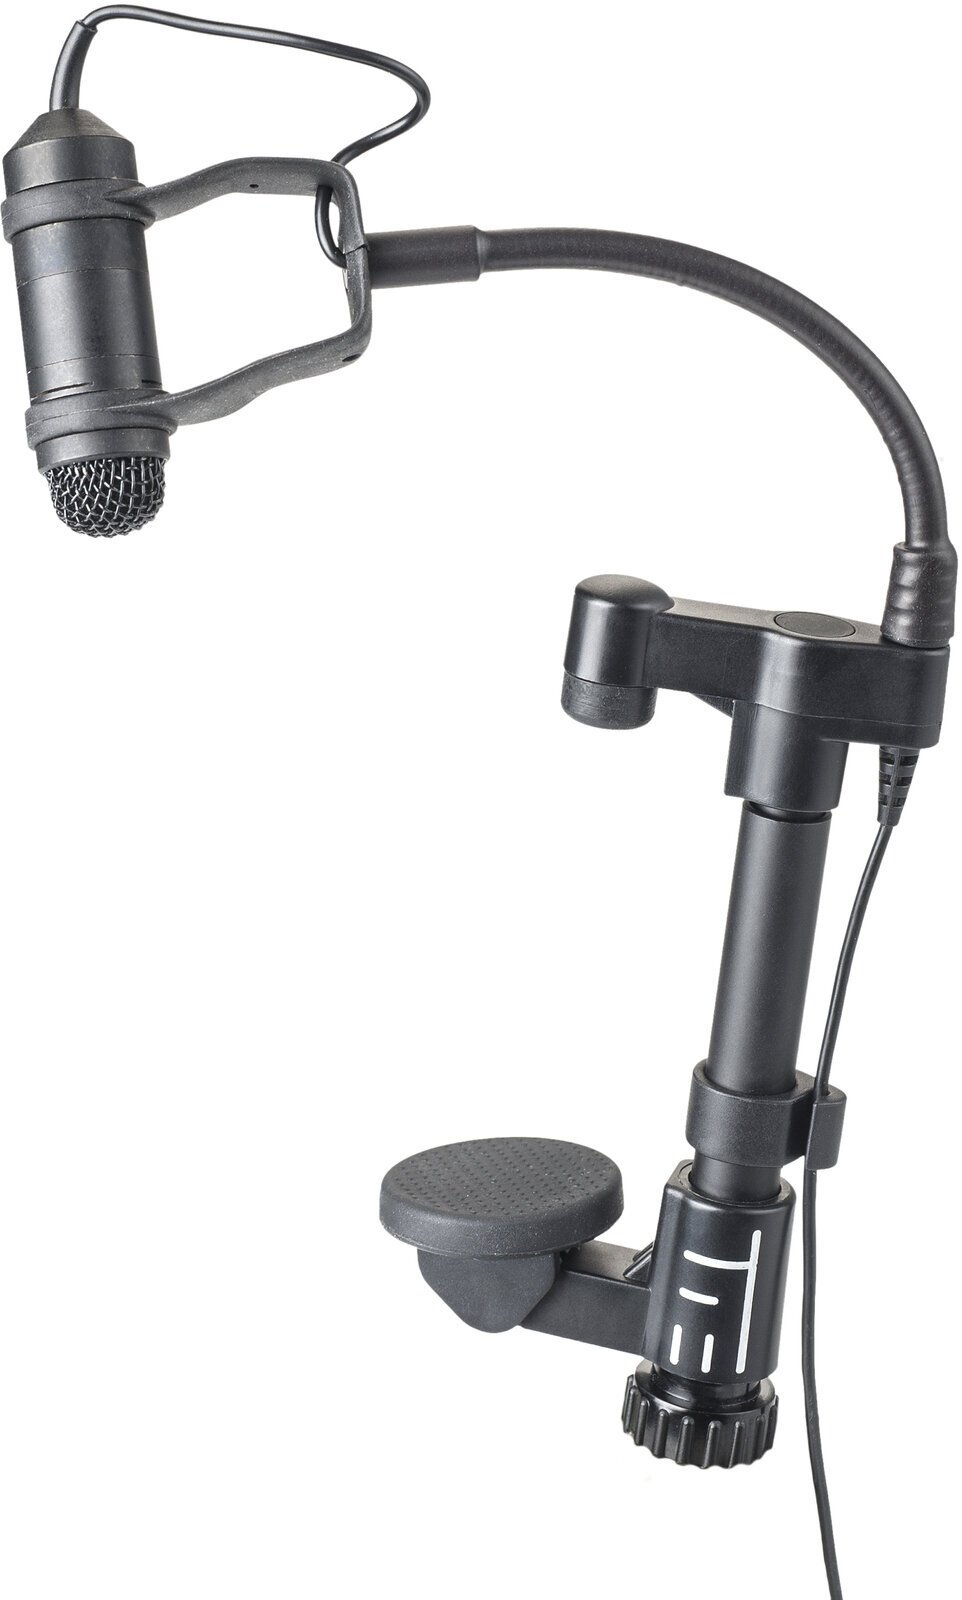 Instrument Condenser Microphone TIE TCX110 Condenser Instrument Microphone for Guitar